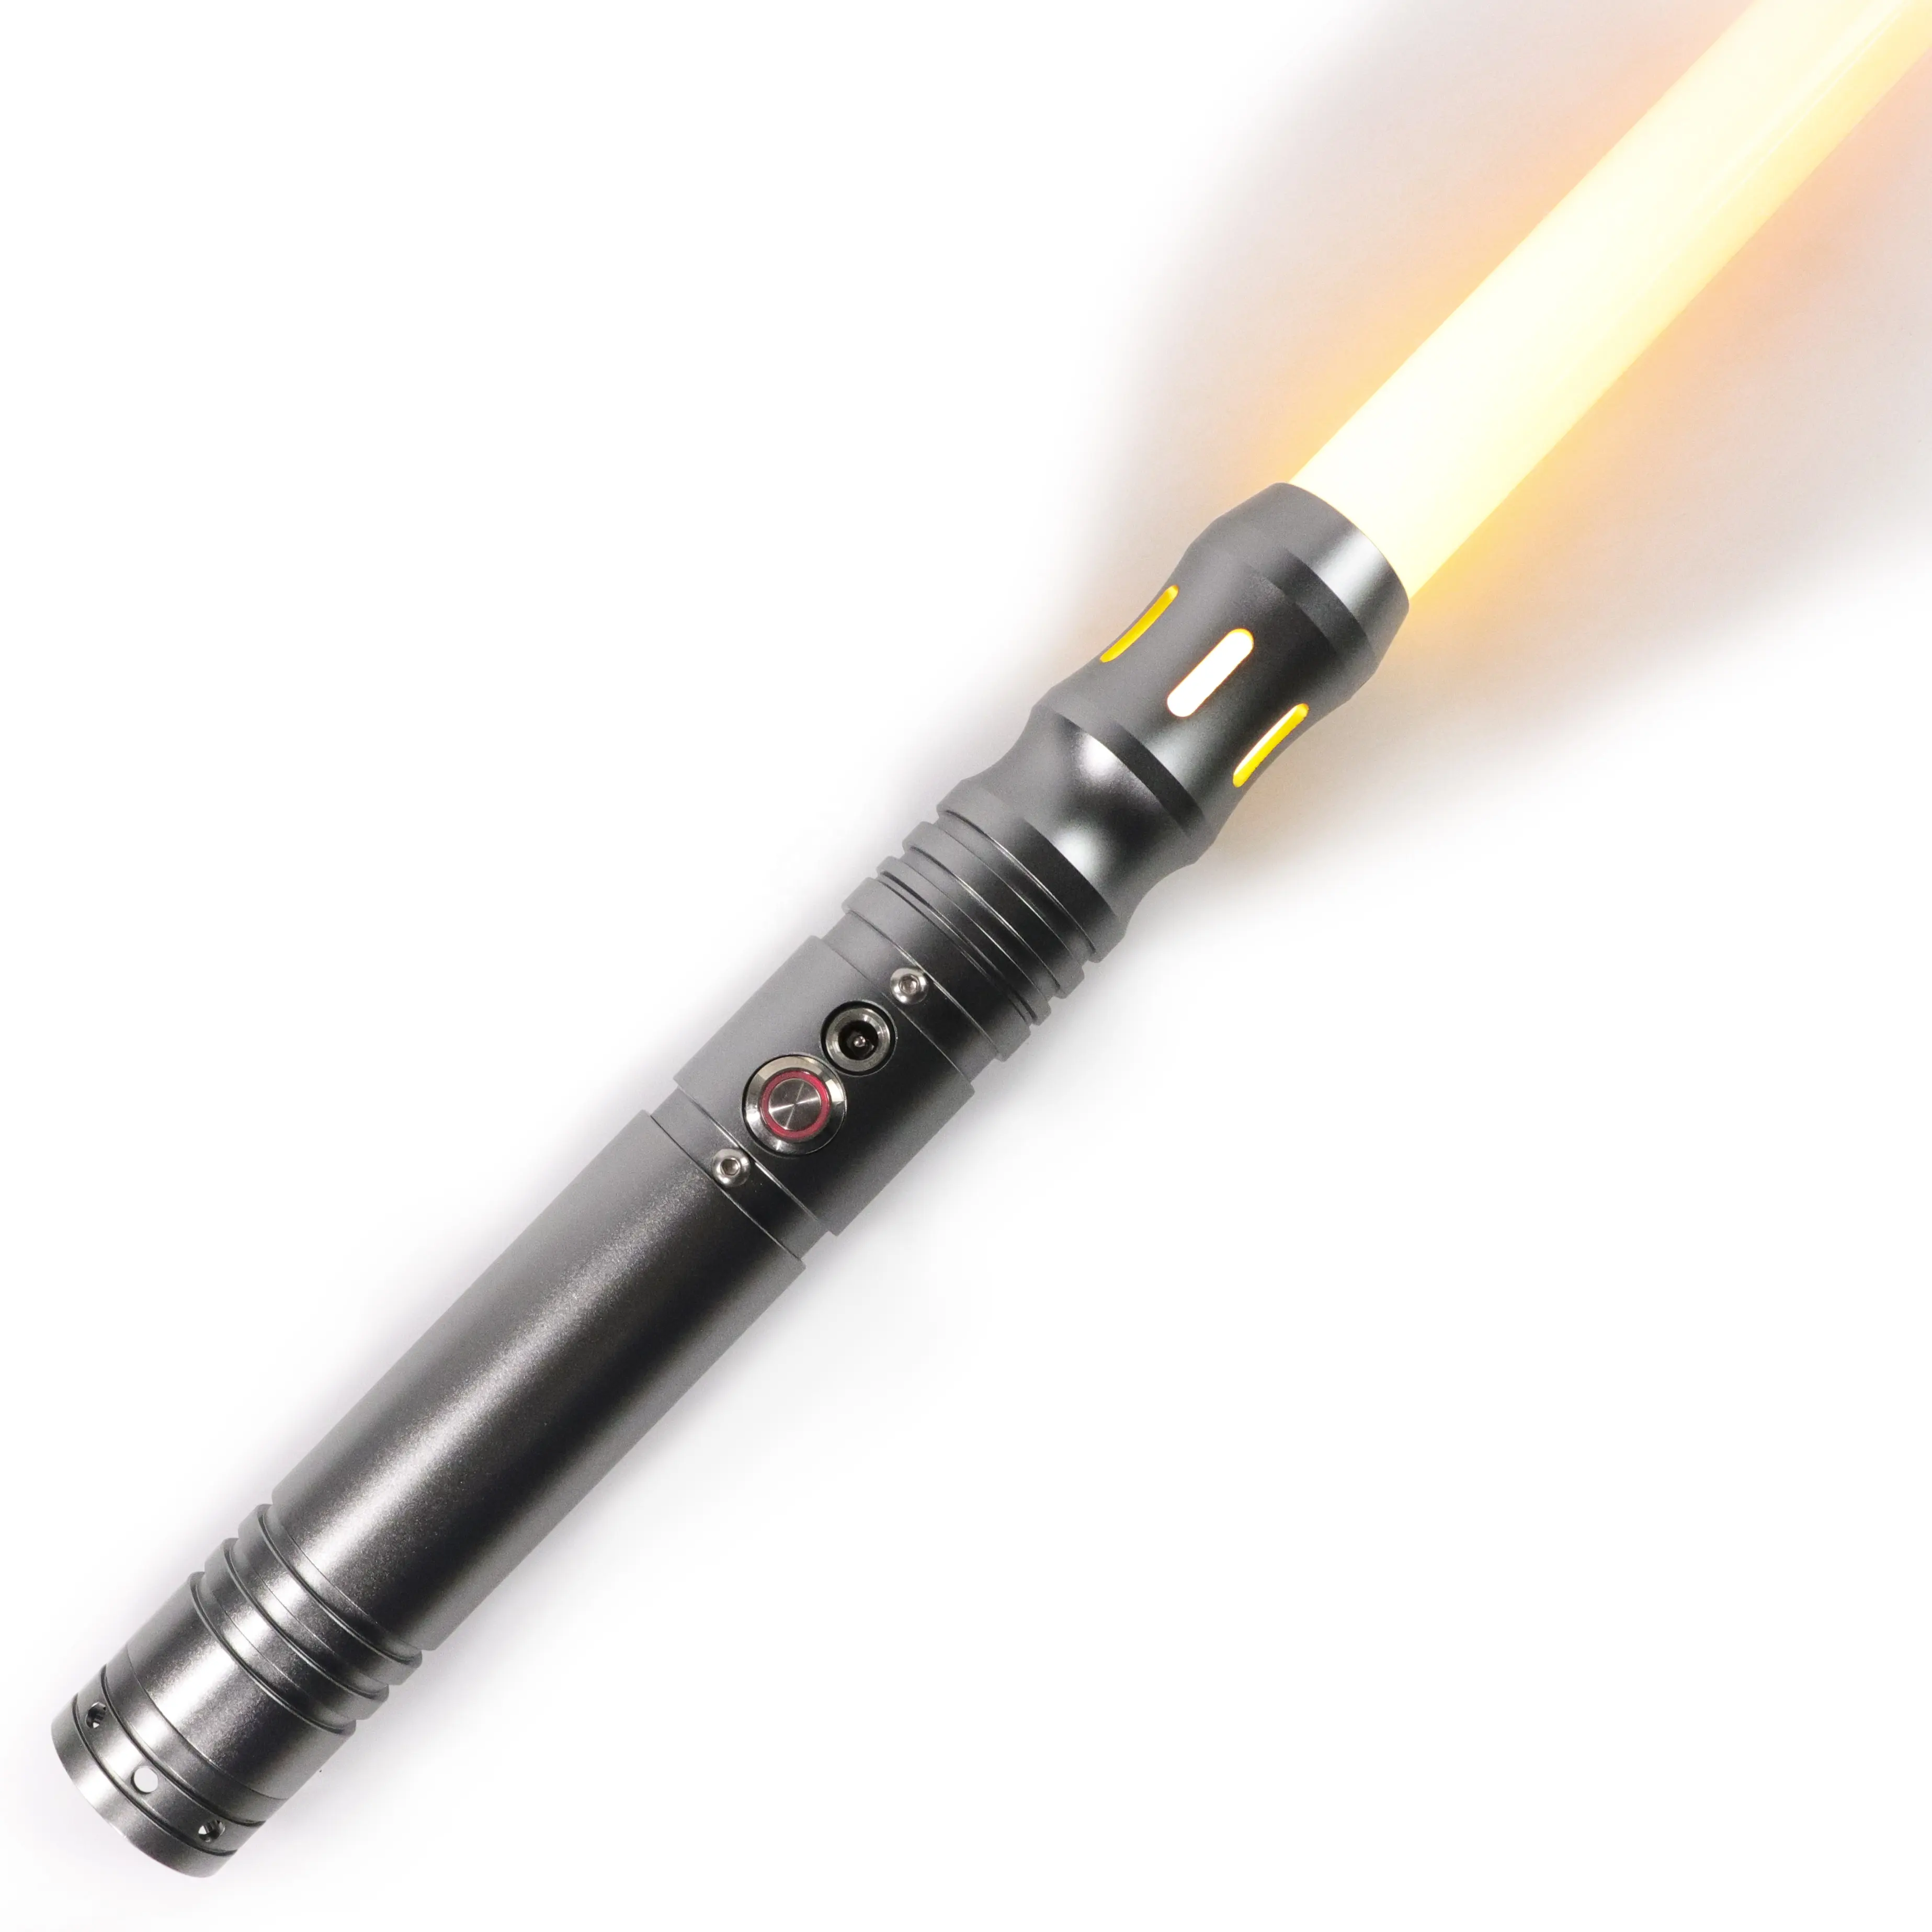 LGT Saberstudio high quality hot selling wholesale lightsaber saber toy